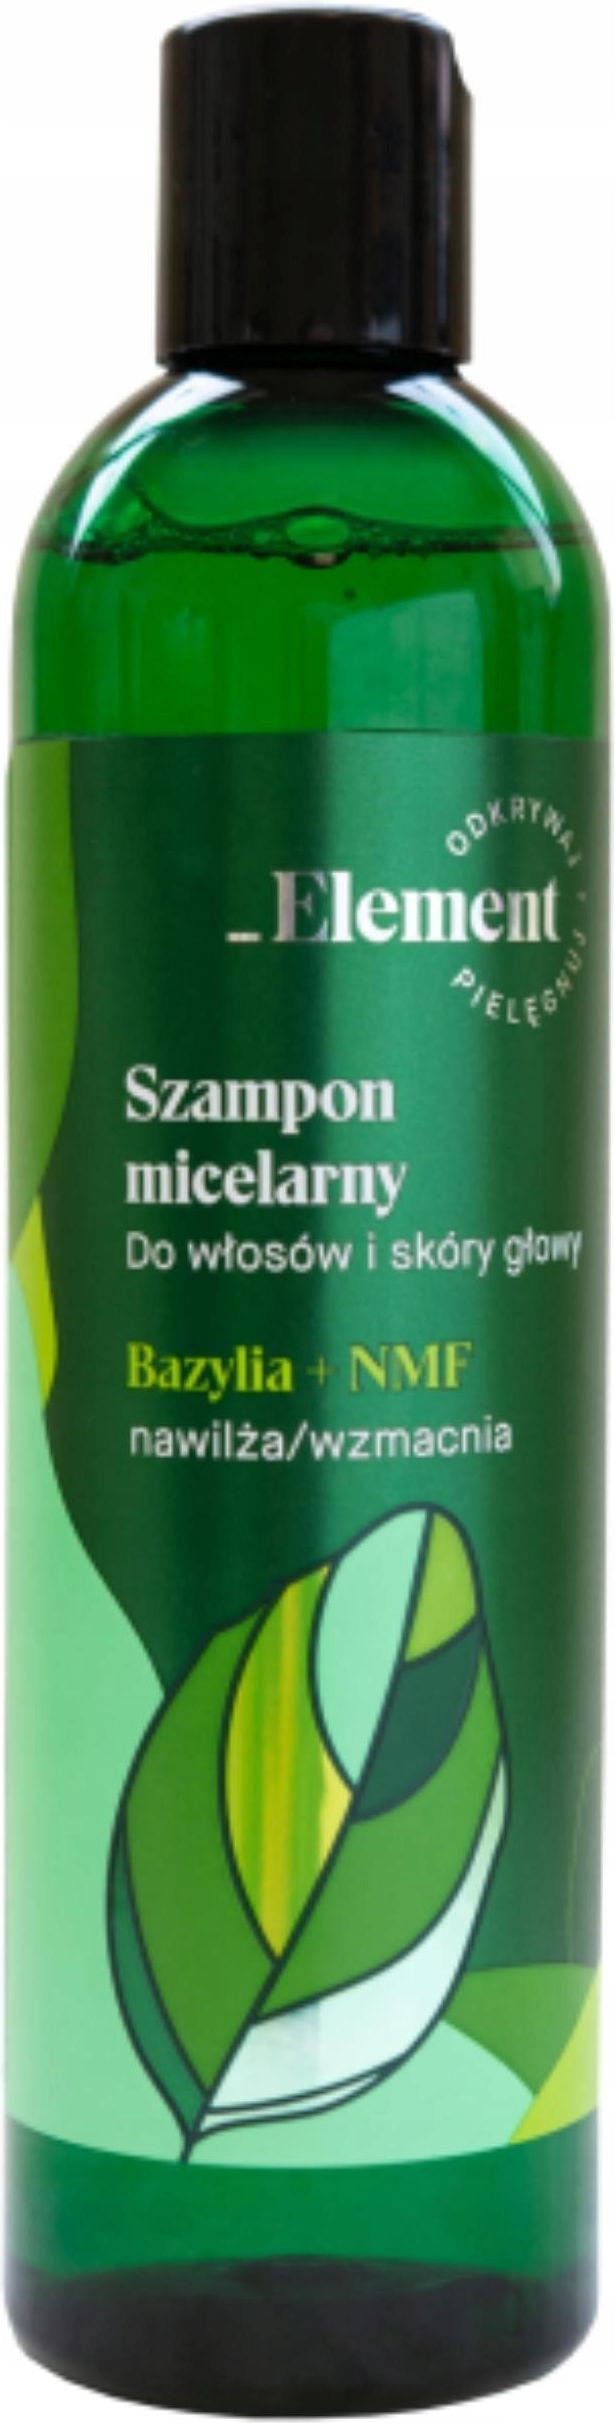 szampon i odżywaka z basilią